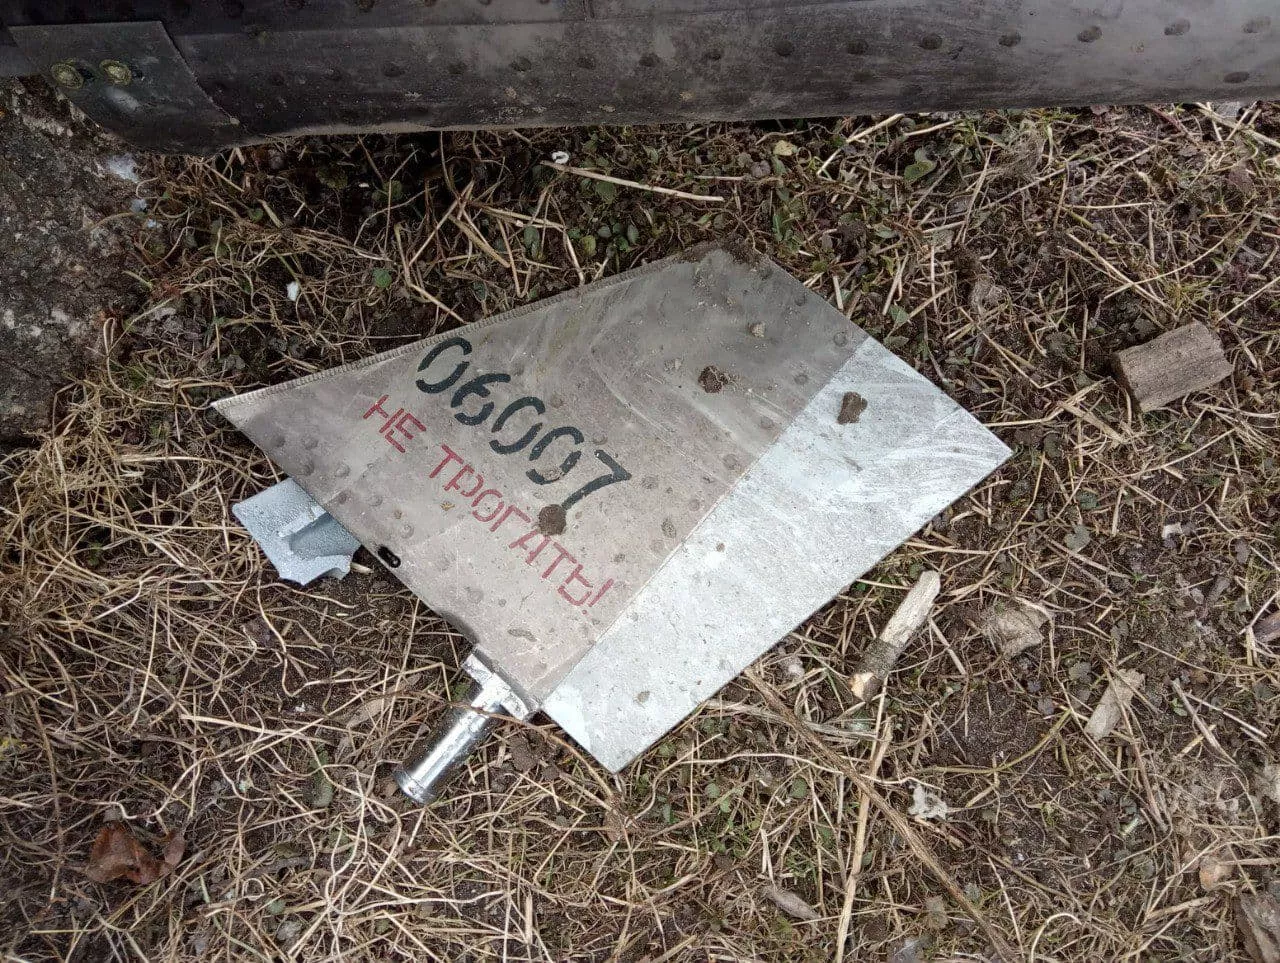 Обломки сбитой российской ракеты. Фото предоставлено Ивановской сельской территориальной общиной